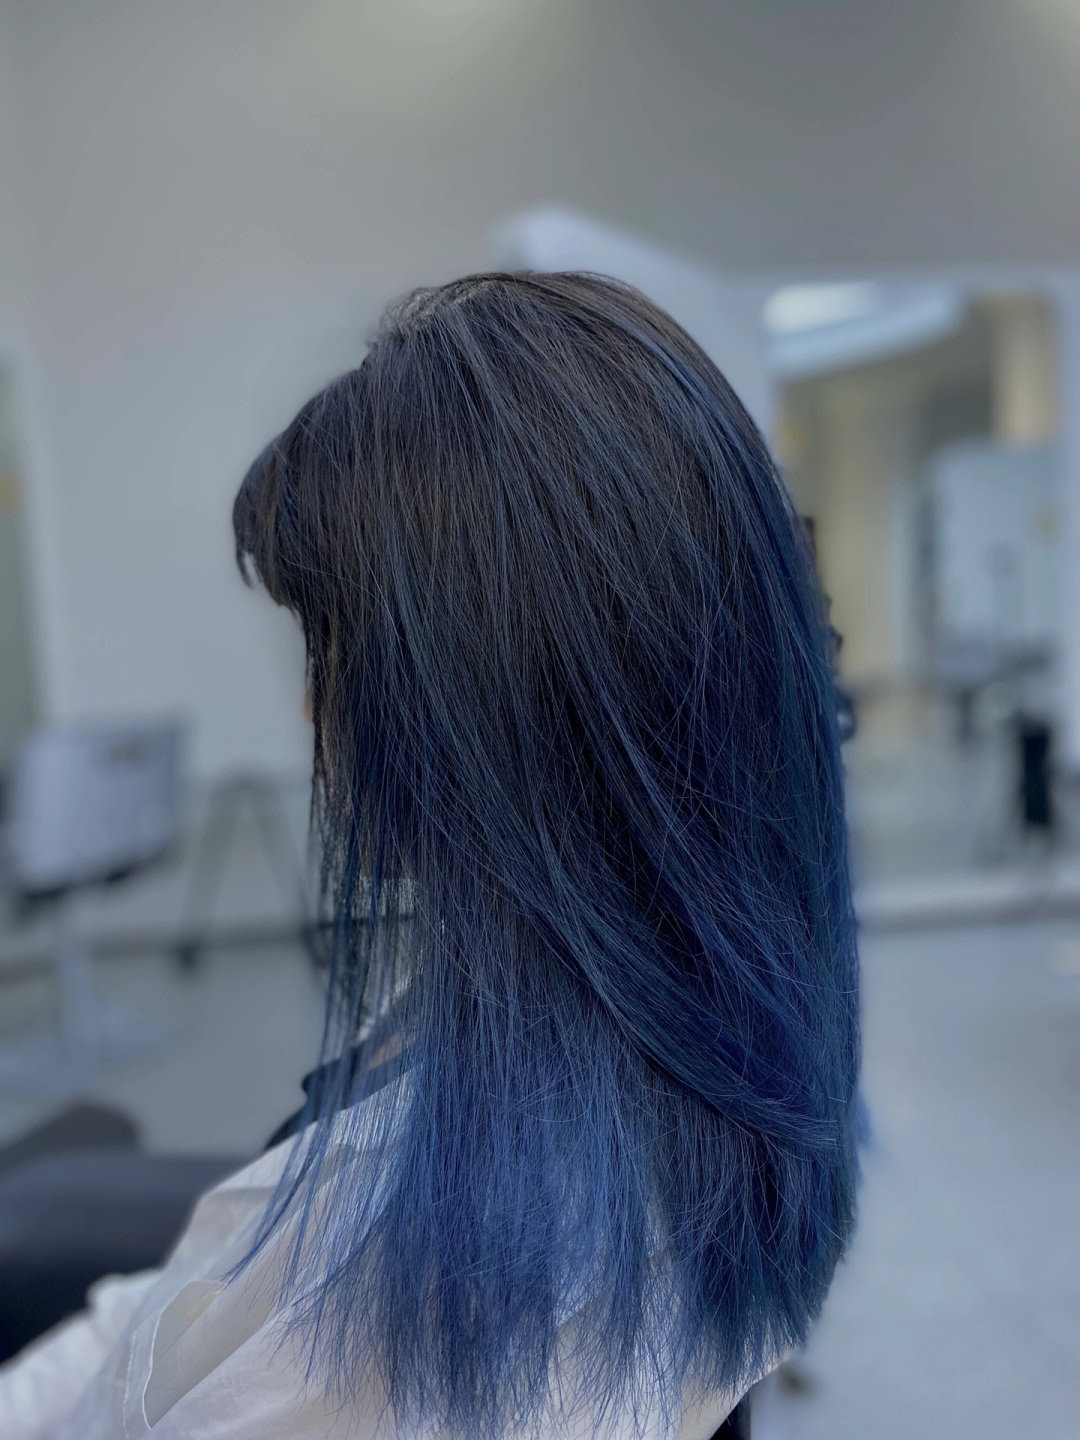 之前就突然想染头发,然后就去染了个渐变蓝色,传说中的巴黎画染,坐了8